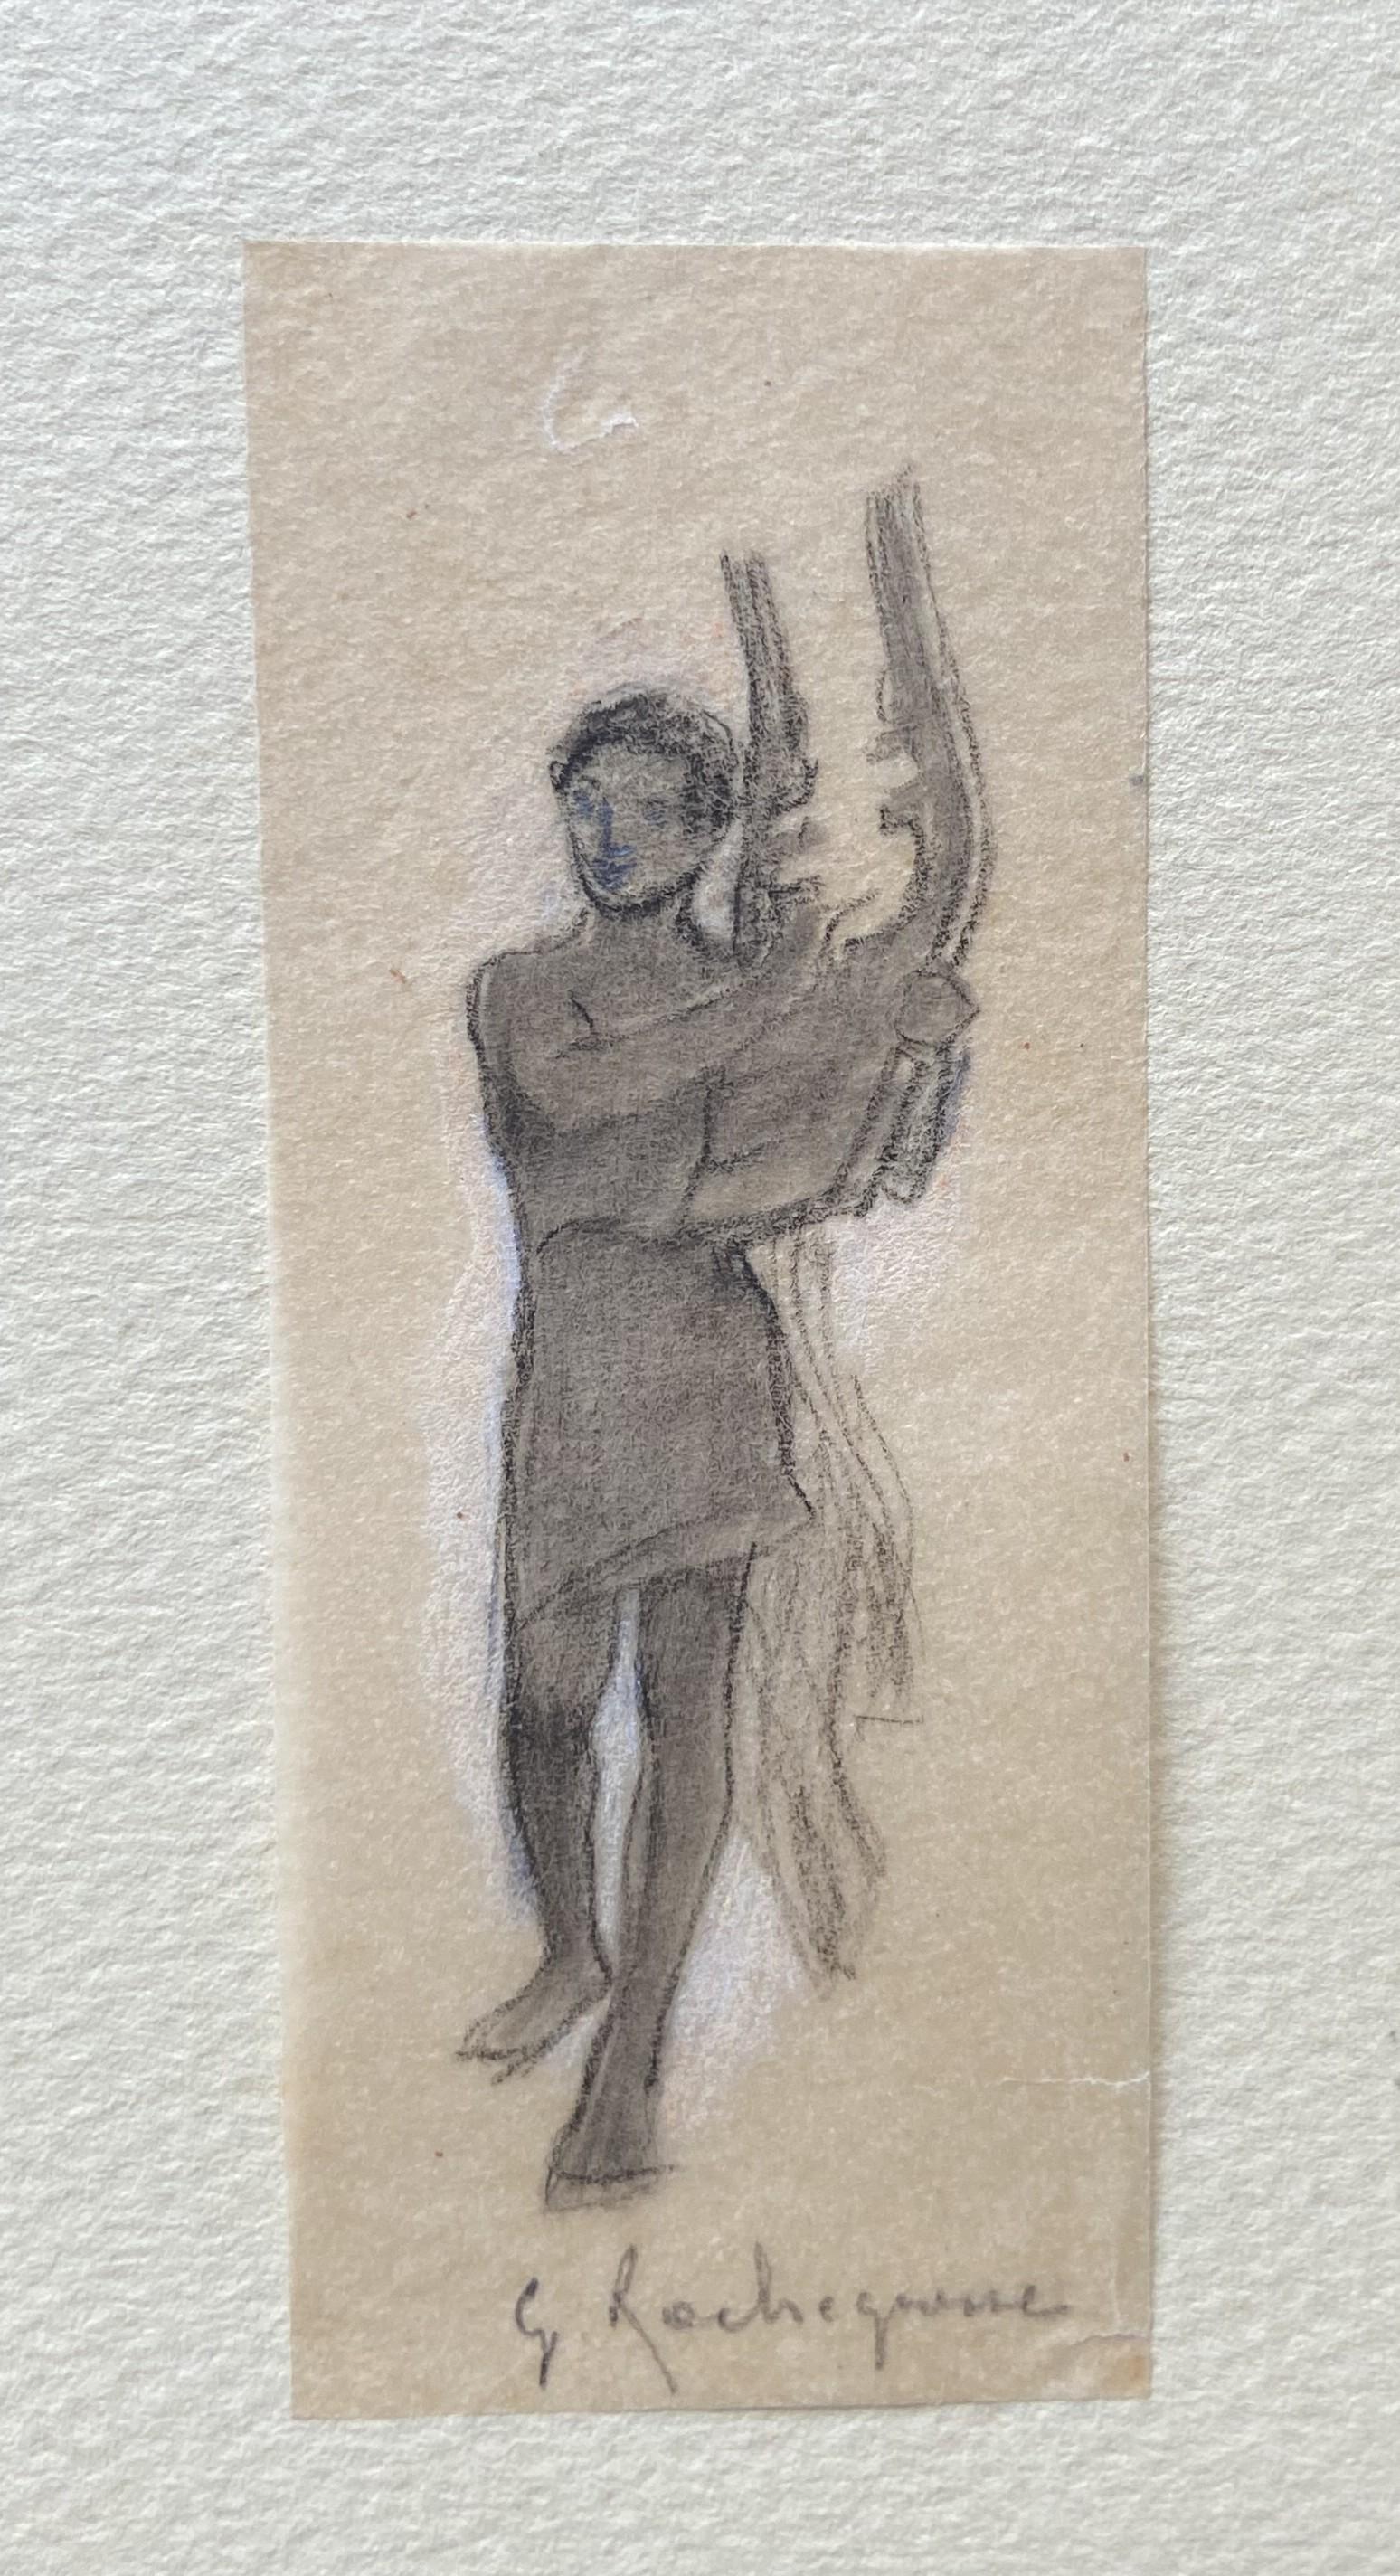 Georges Antoine Rochegrosse  (1859-1938) 
Un joueur de cithare
crayon carbone sur papier fin
8.5 x 3.3 cm
En bon état.
Encadré : 35 x 24 cm
Provenance : Succession de l'artiste et par héritage à l'ancien propriétaire.

Ce minuscule dessin est comme